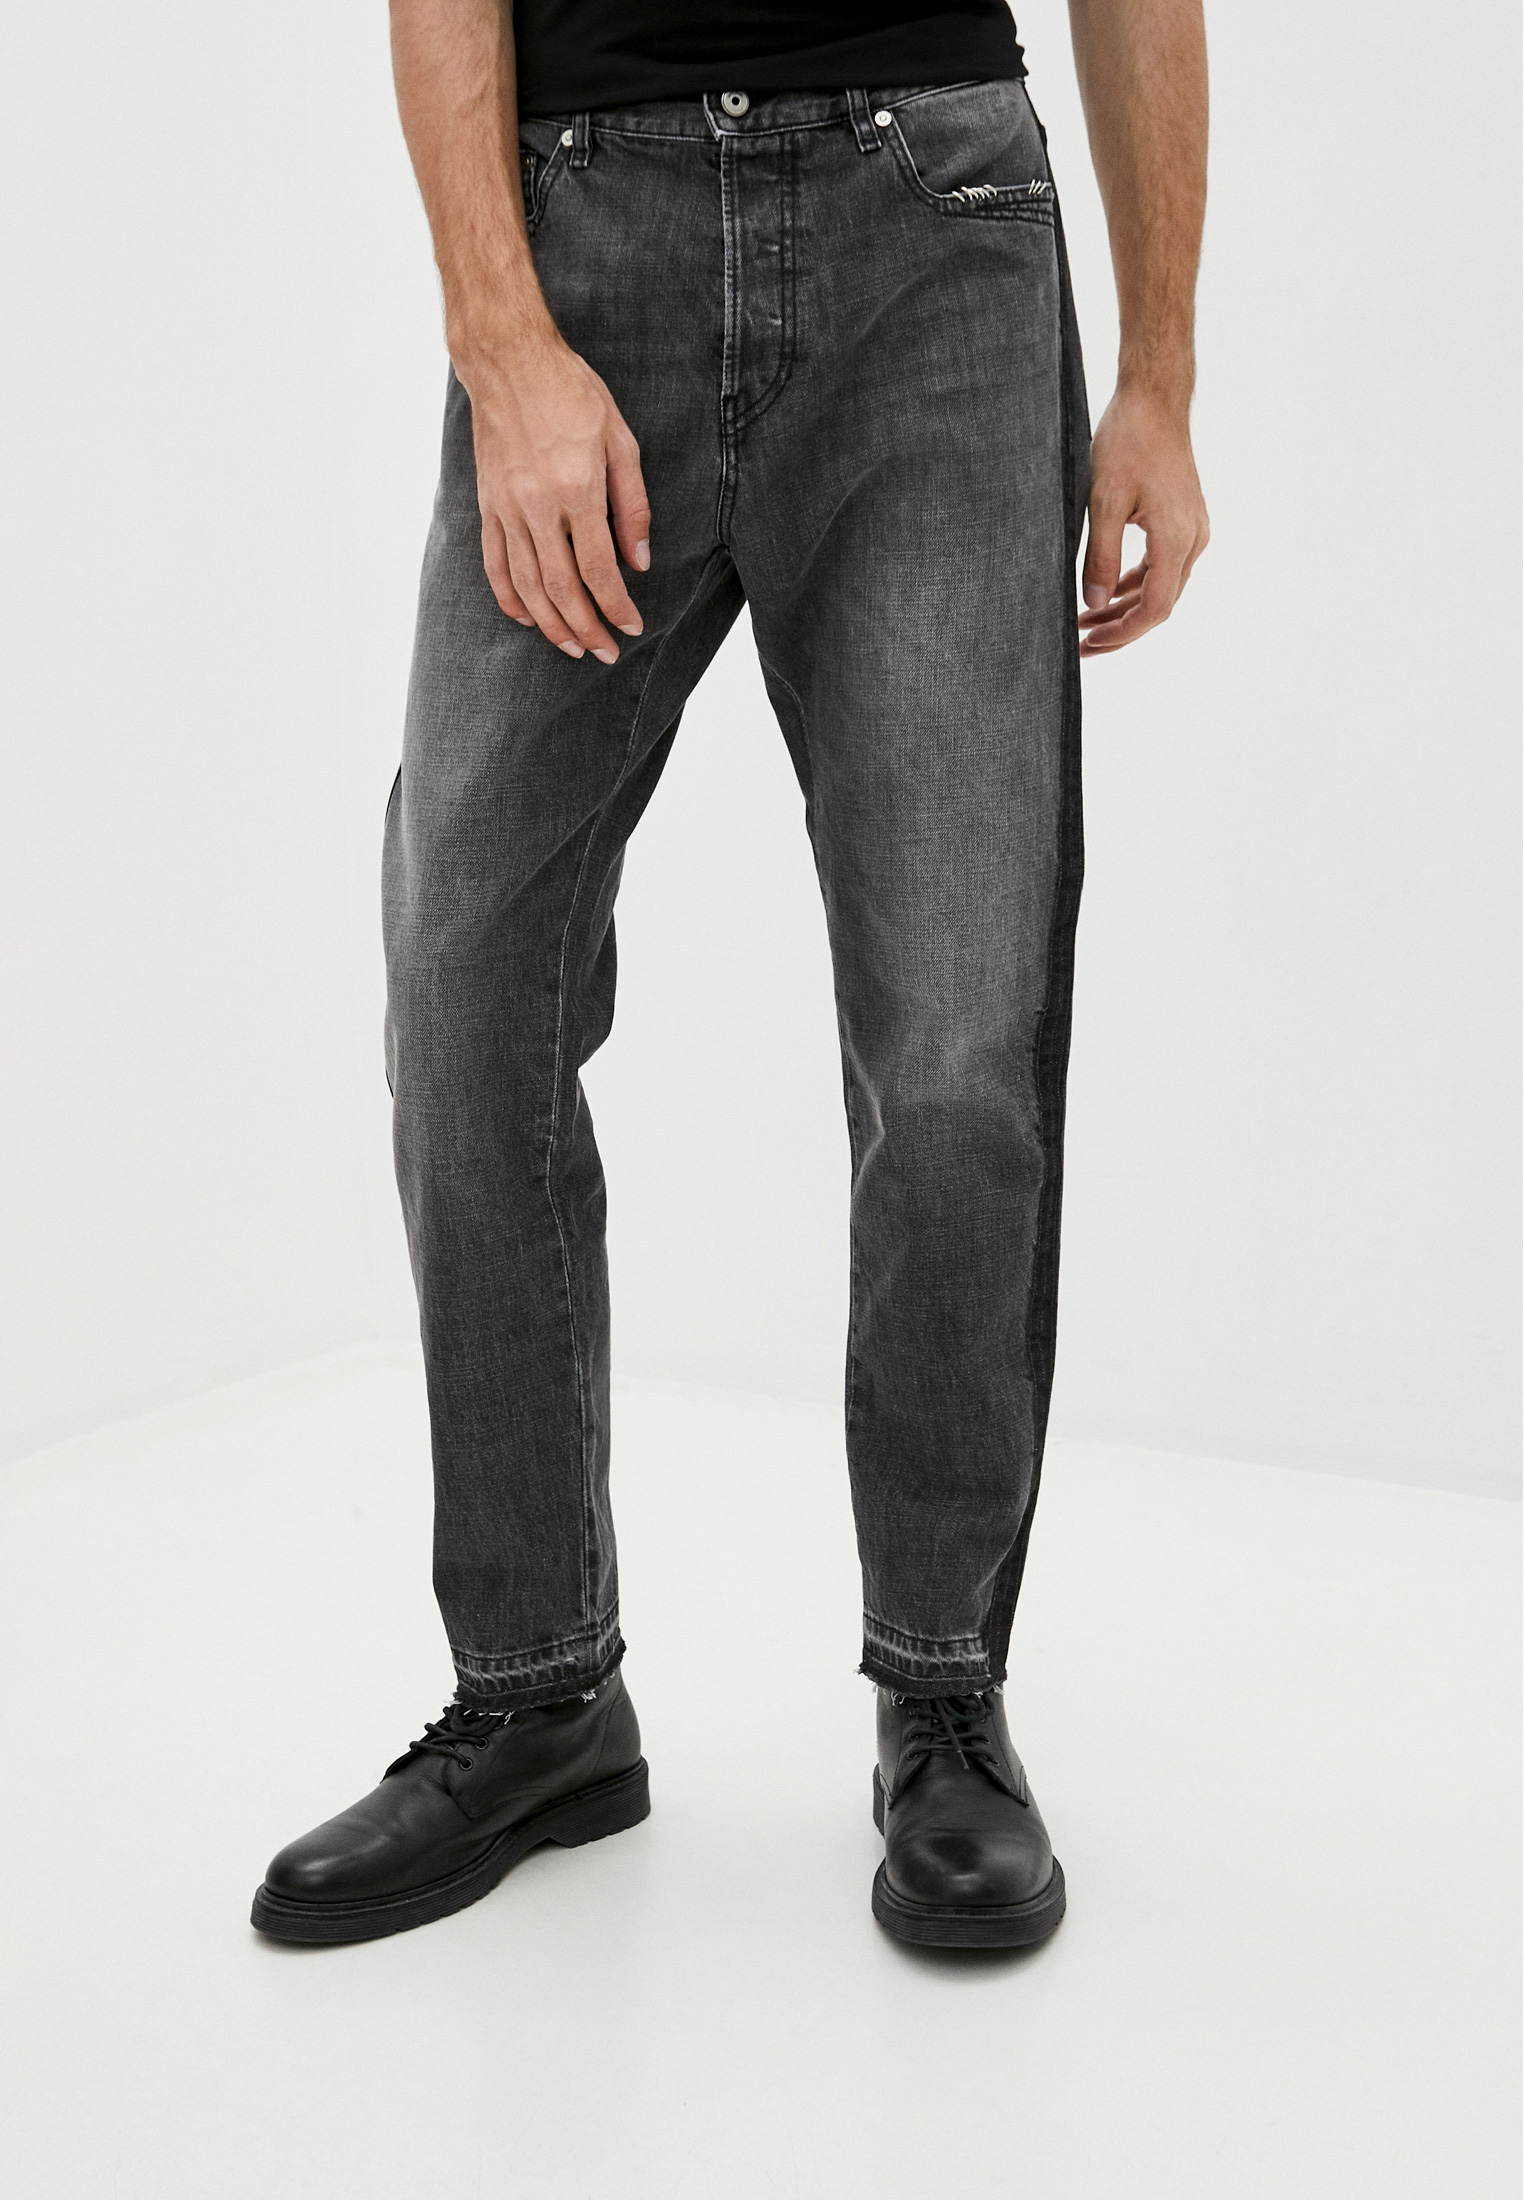 Мужские зауженные джинсы Just Cavalli (Джаст Кавалли) S01LA0090 N31657: изображение 1